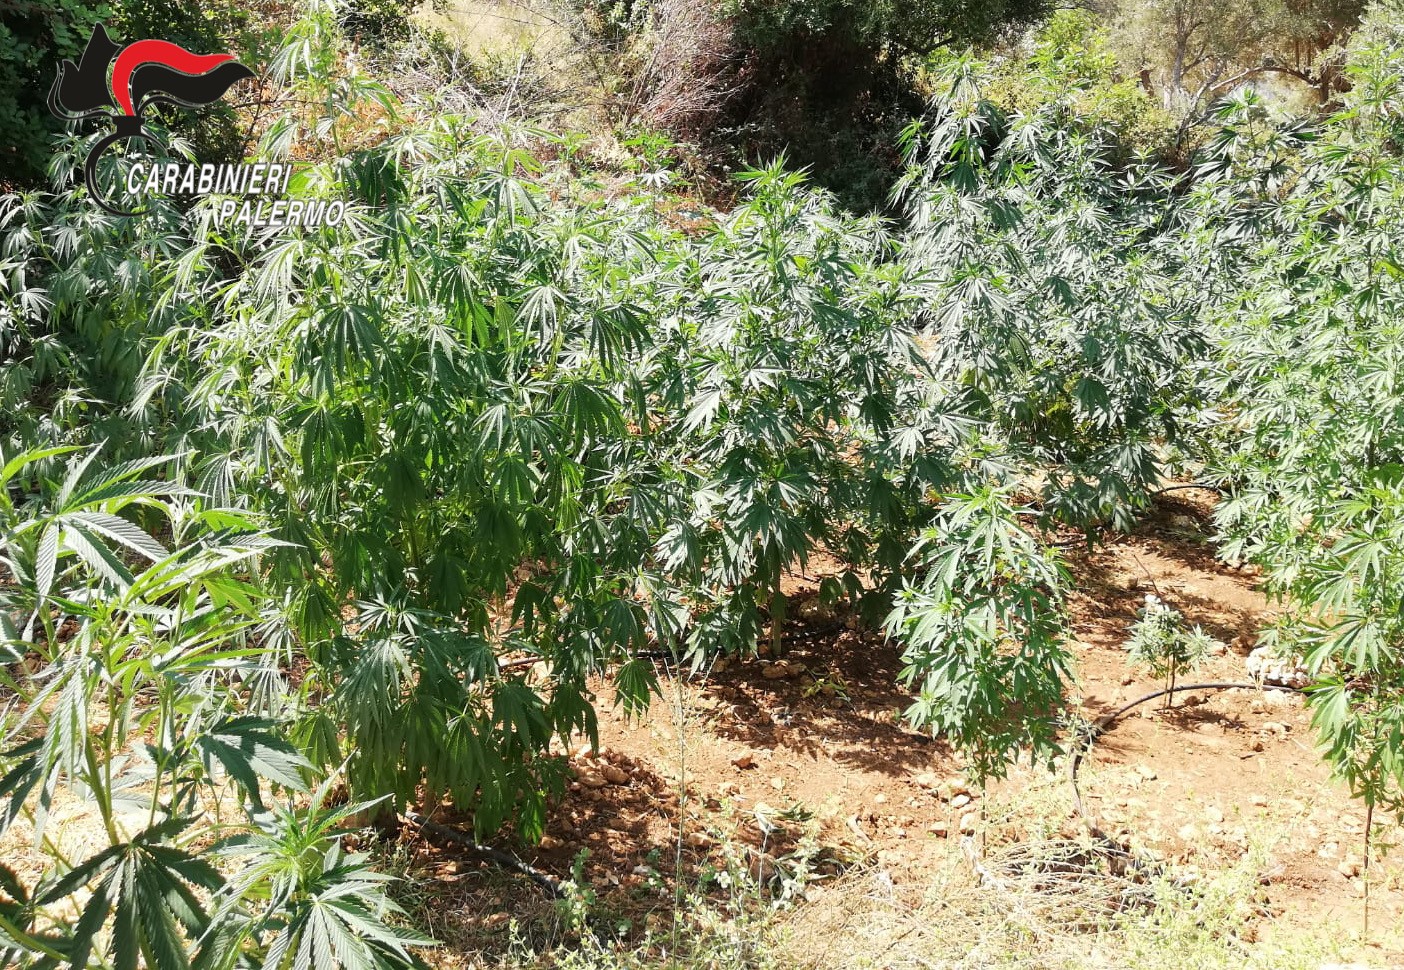 Piante di cannabis alte fino a due metri nel giardino di casa: arrestato un 51enne